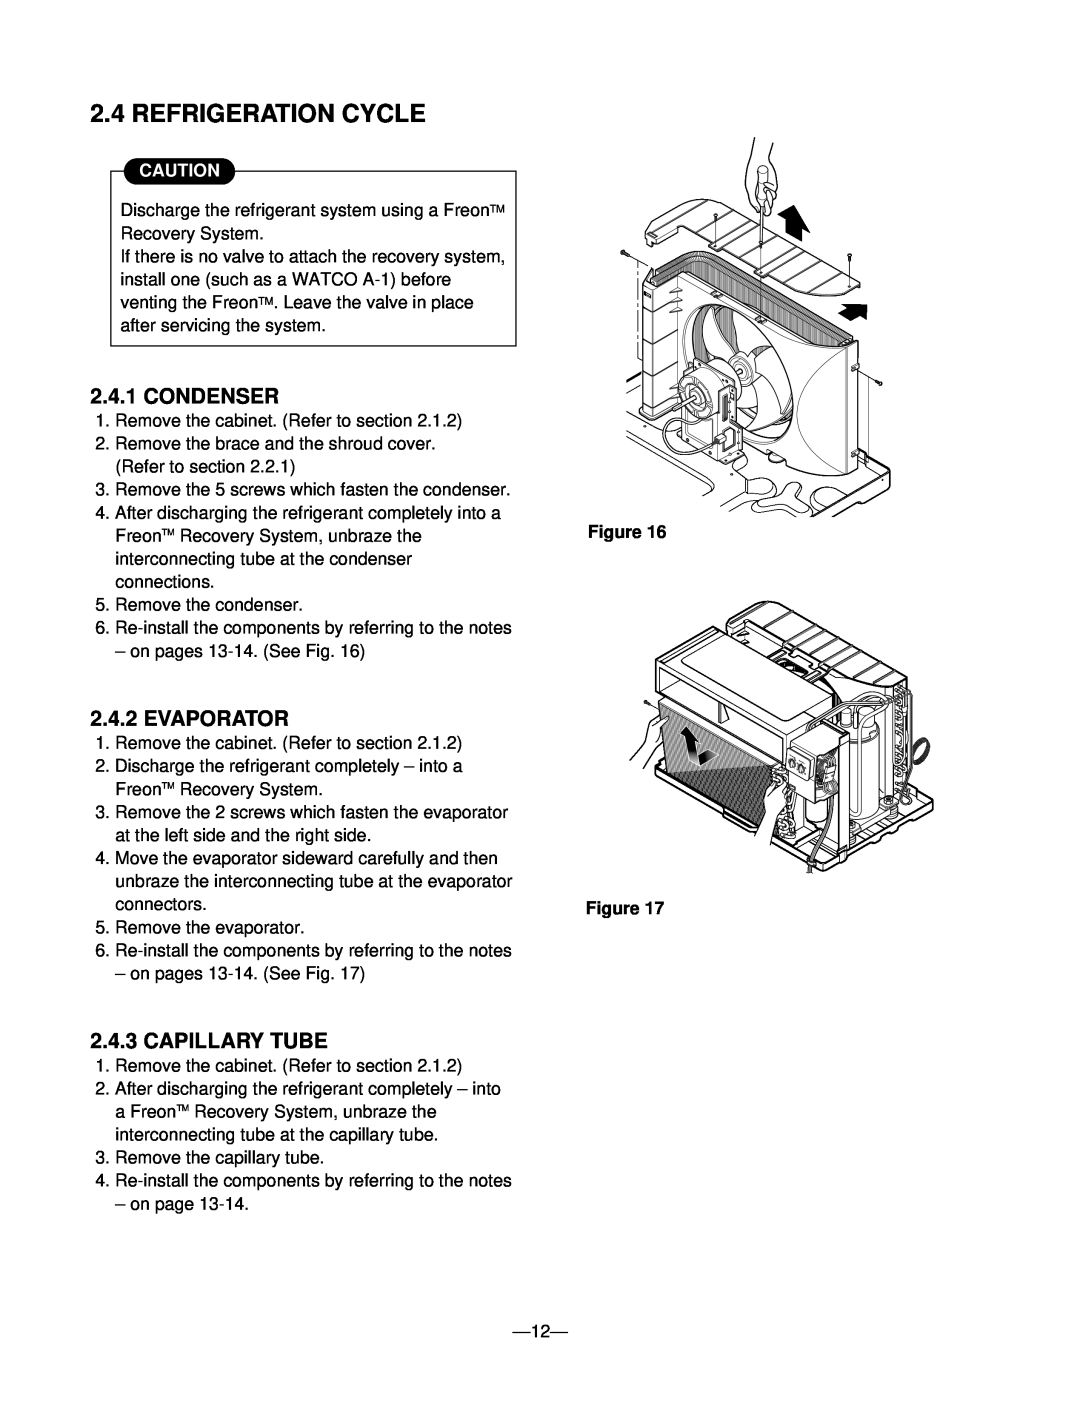 Heat Controller BDE-103, BD-101, BD-123, BDE-123 Refrigeration Cycle, Condenser, Evaporator, Capillary Tube, Figure Figure 